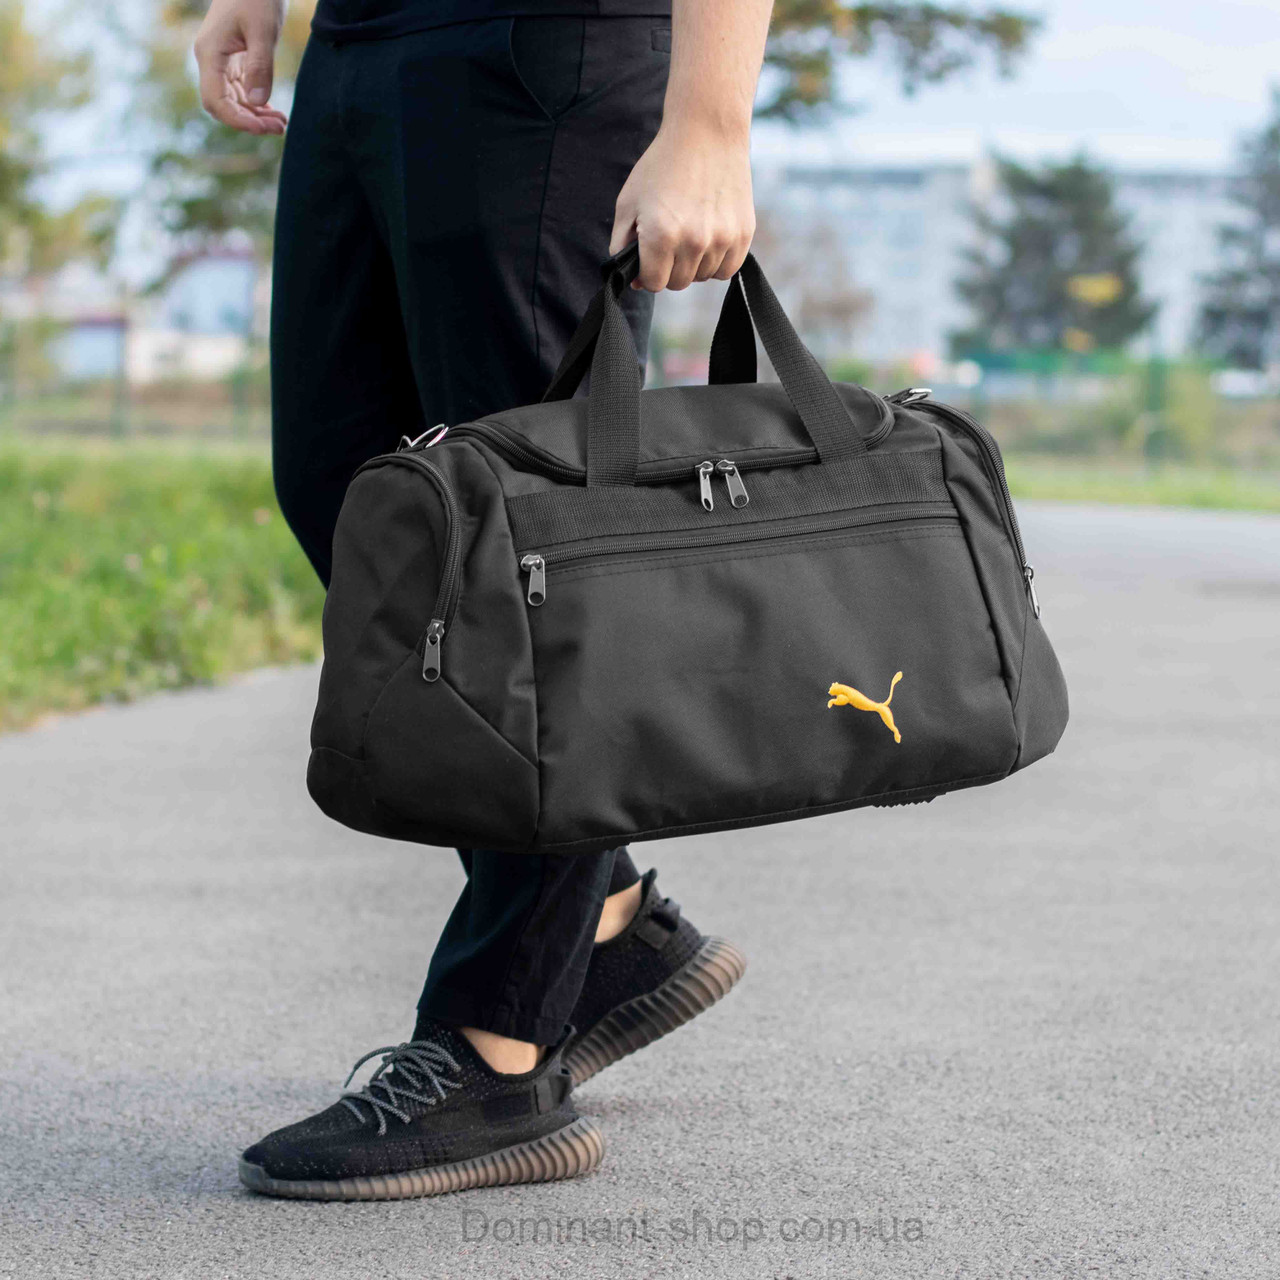 Спортивна сумка дорожня P TALES Yellow чорна для поїздок та тренувань містка на 36 літри